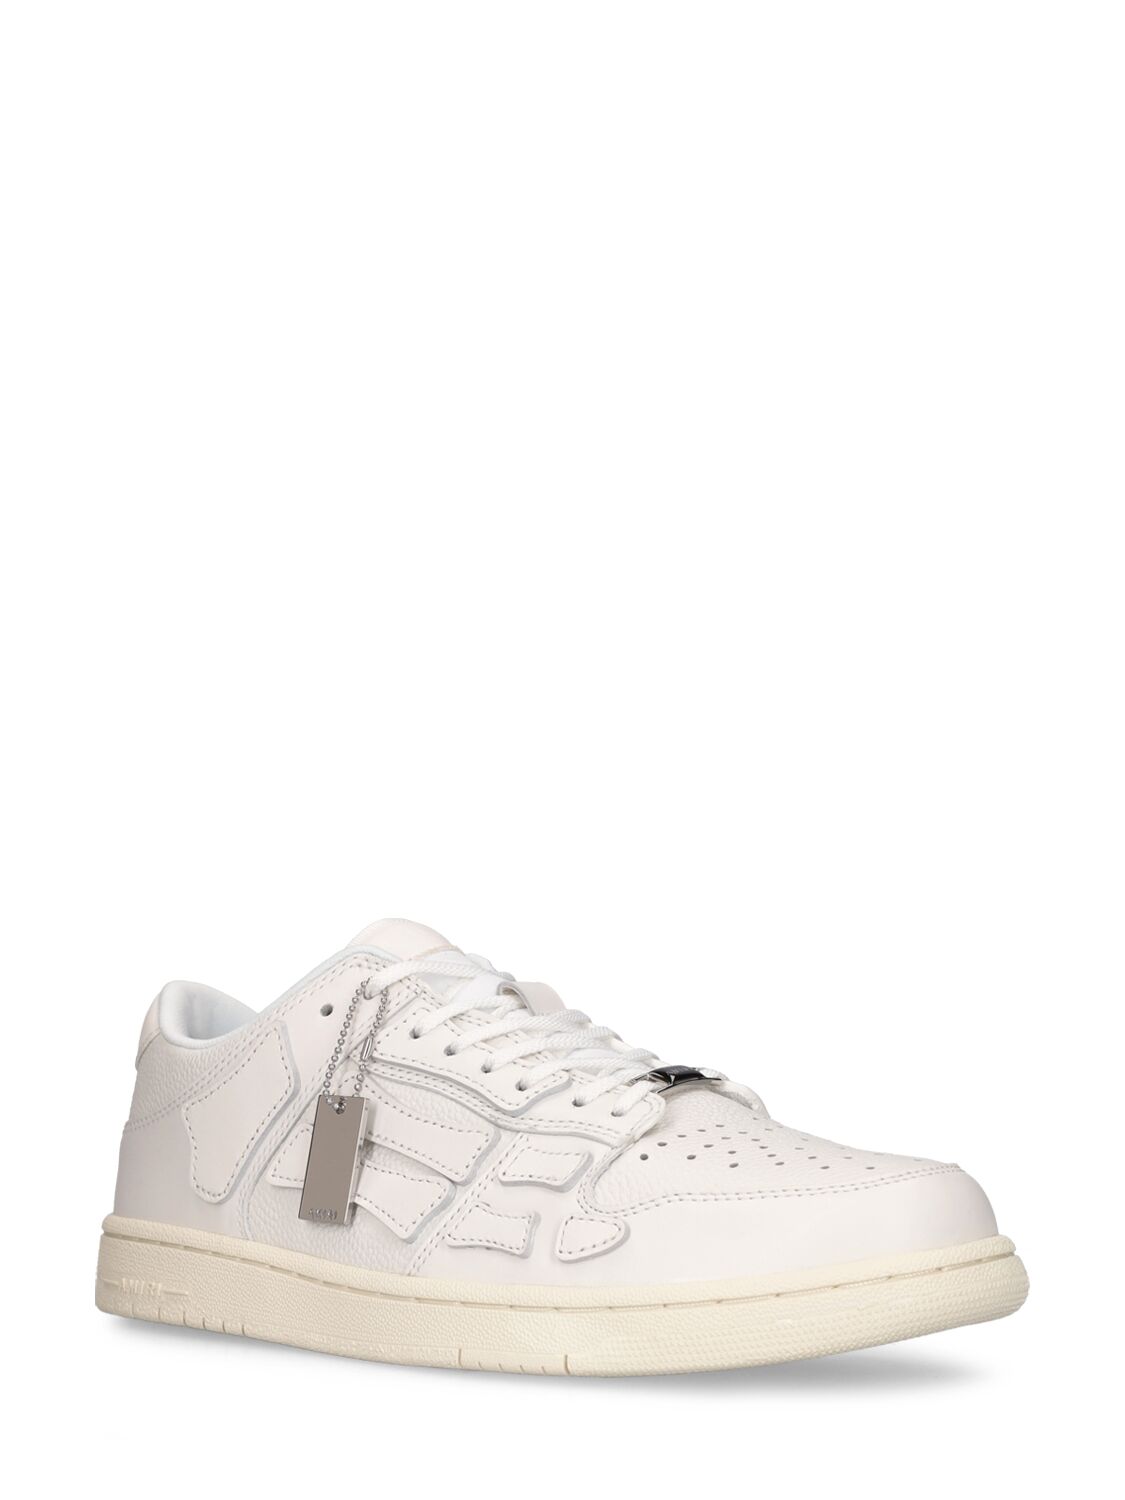 Shop Amiri Skel Low Top Sneakers In White